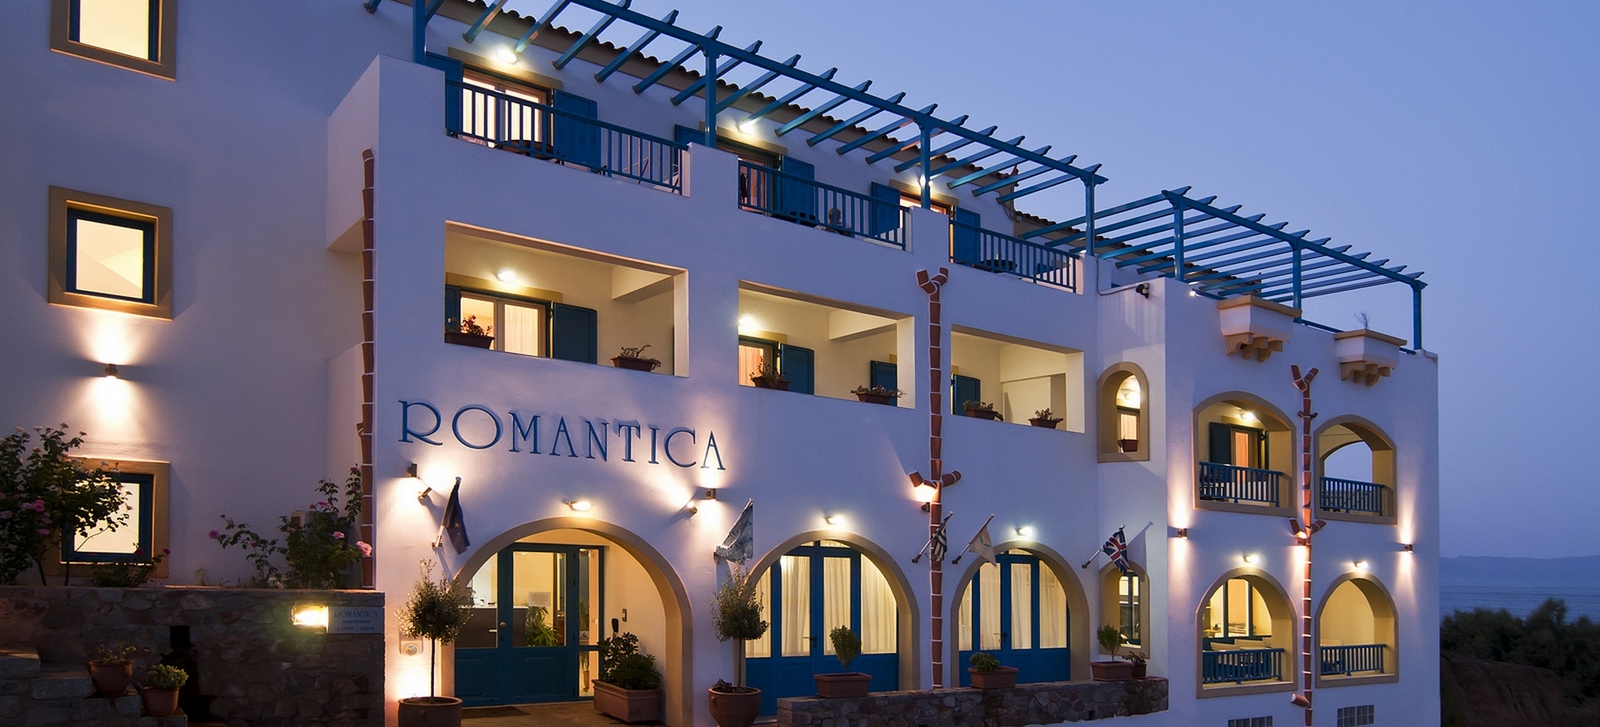 Romantica Hotel